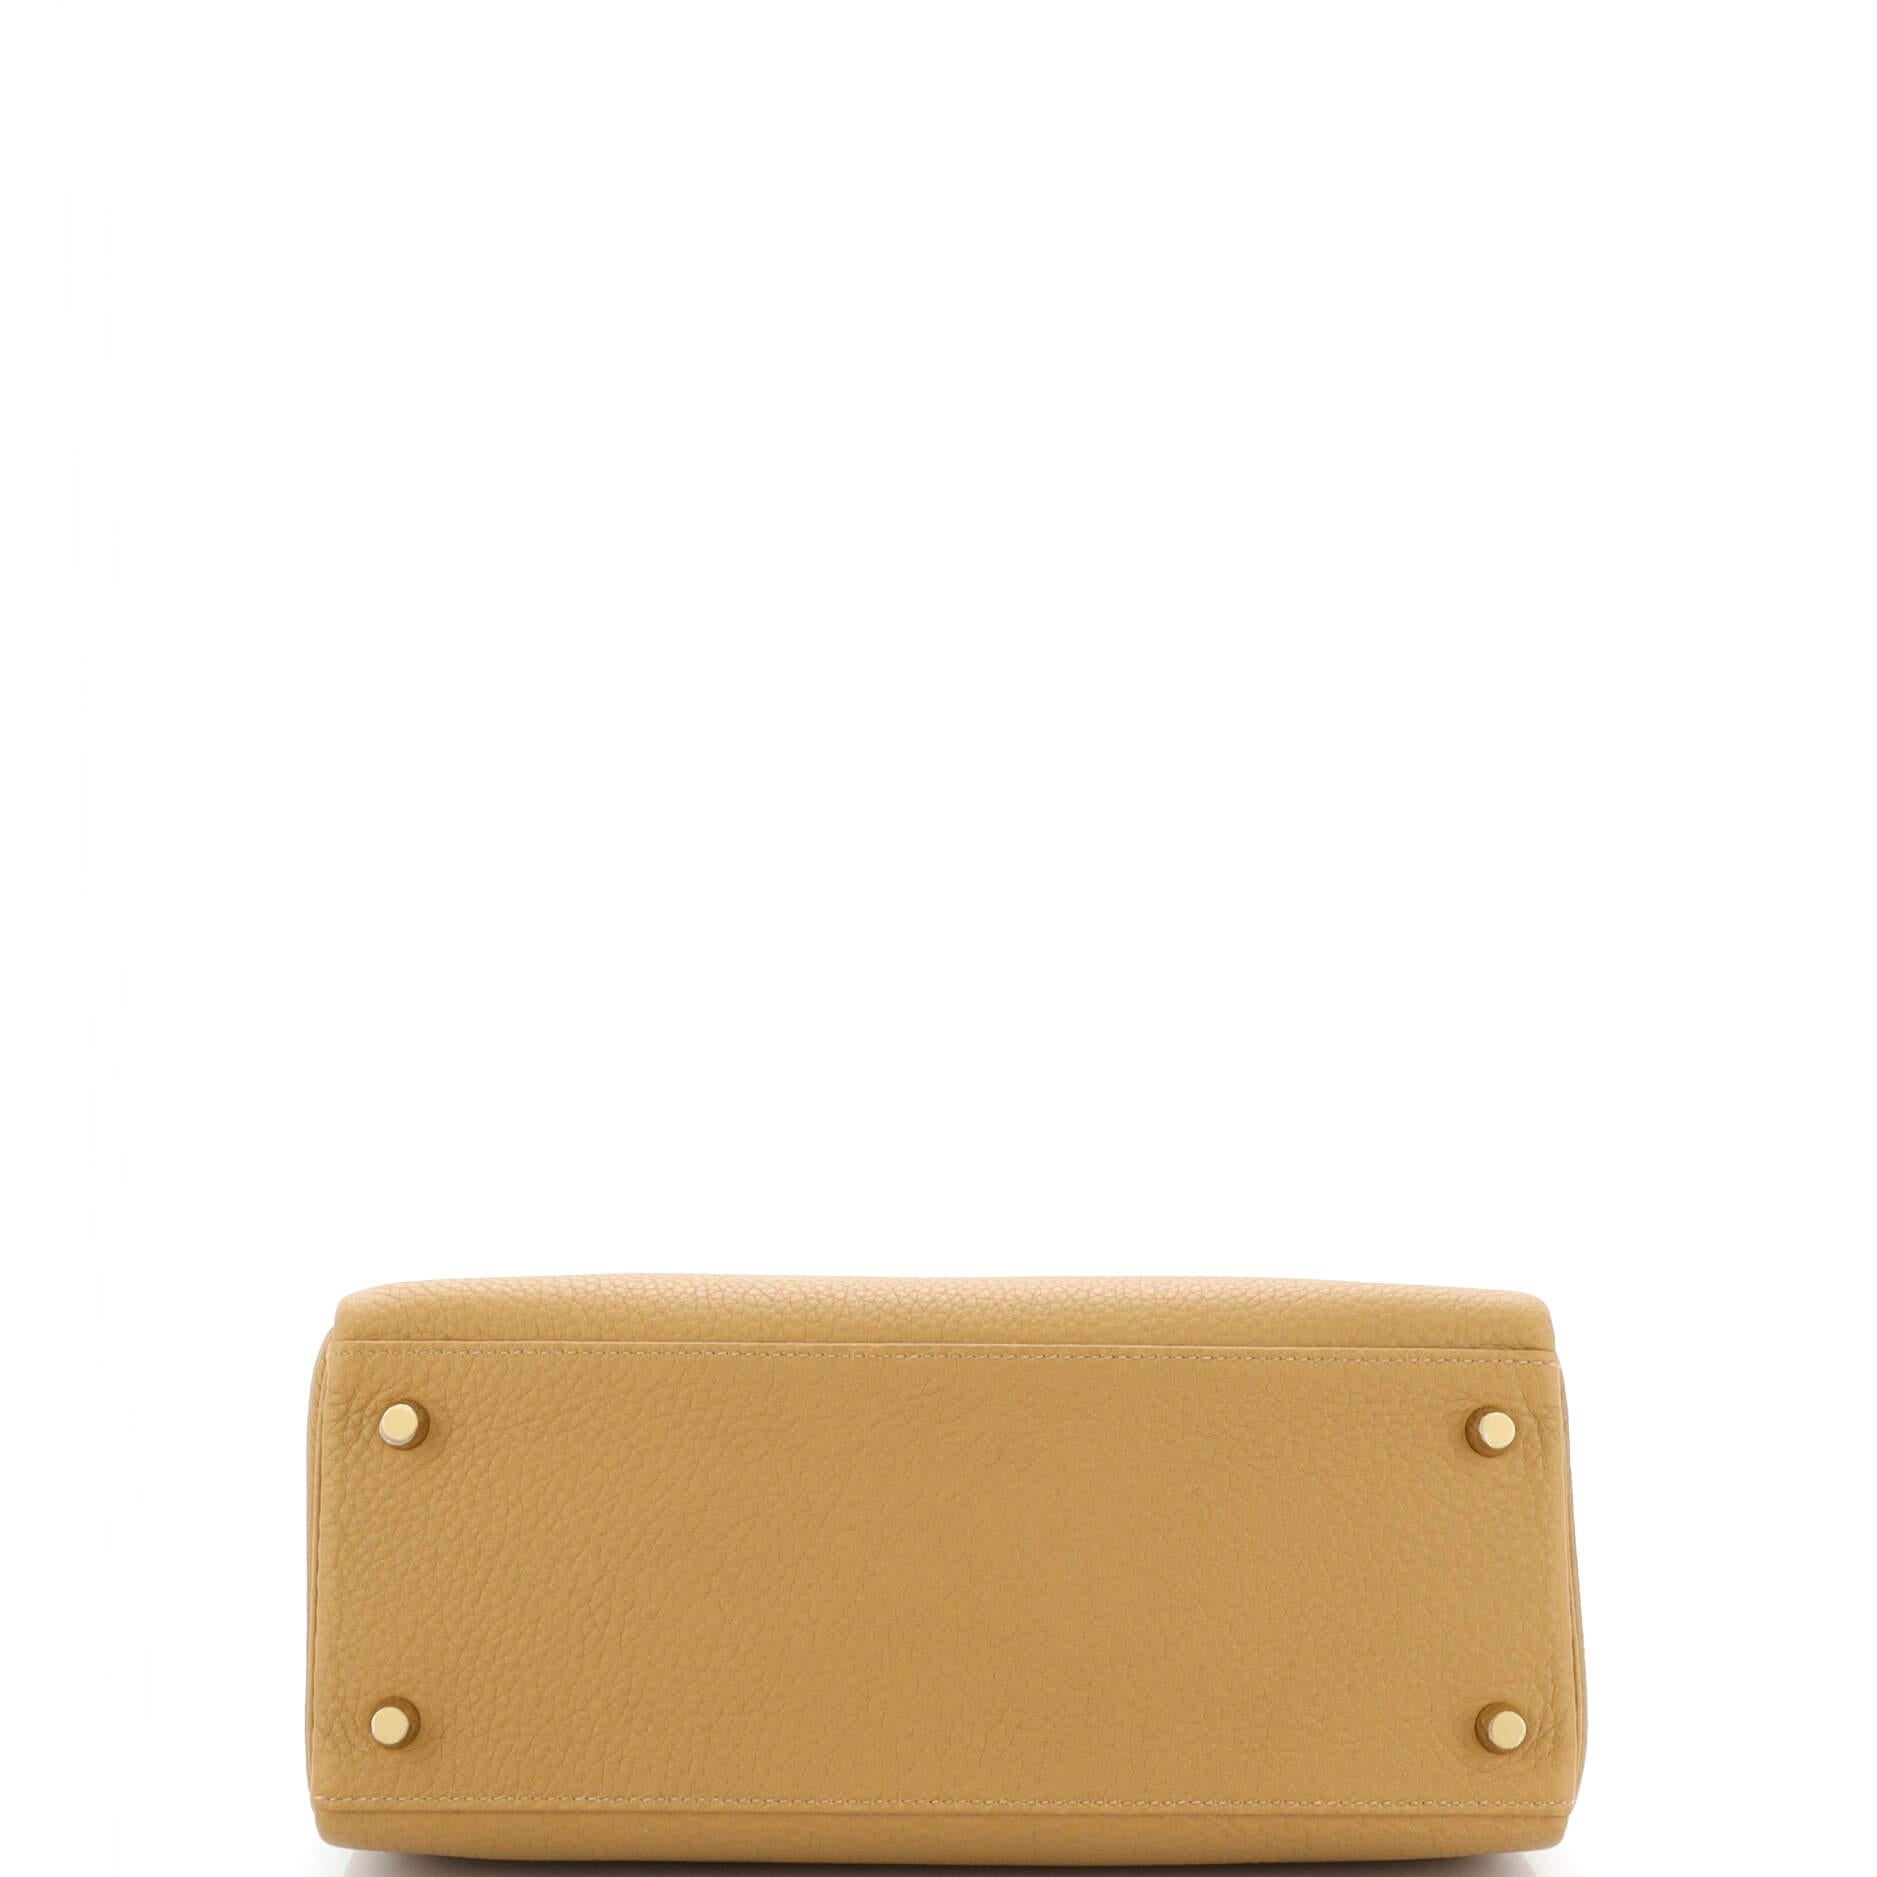 Hermes Kelly Handbag Biscuit Togo with Gold Hardware 28 1